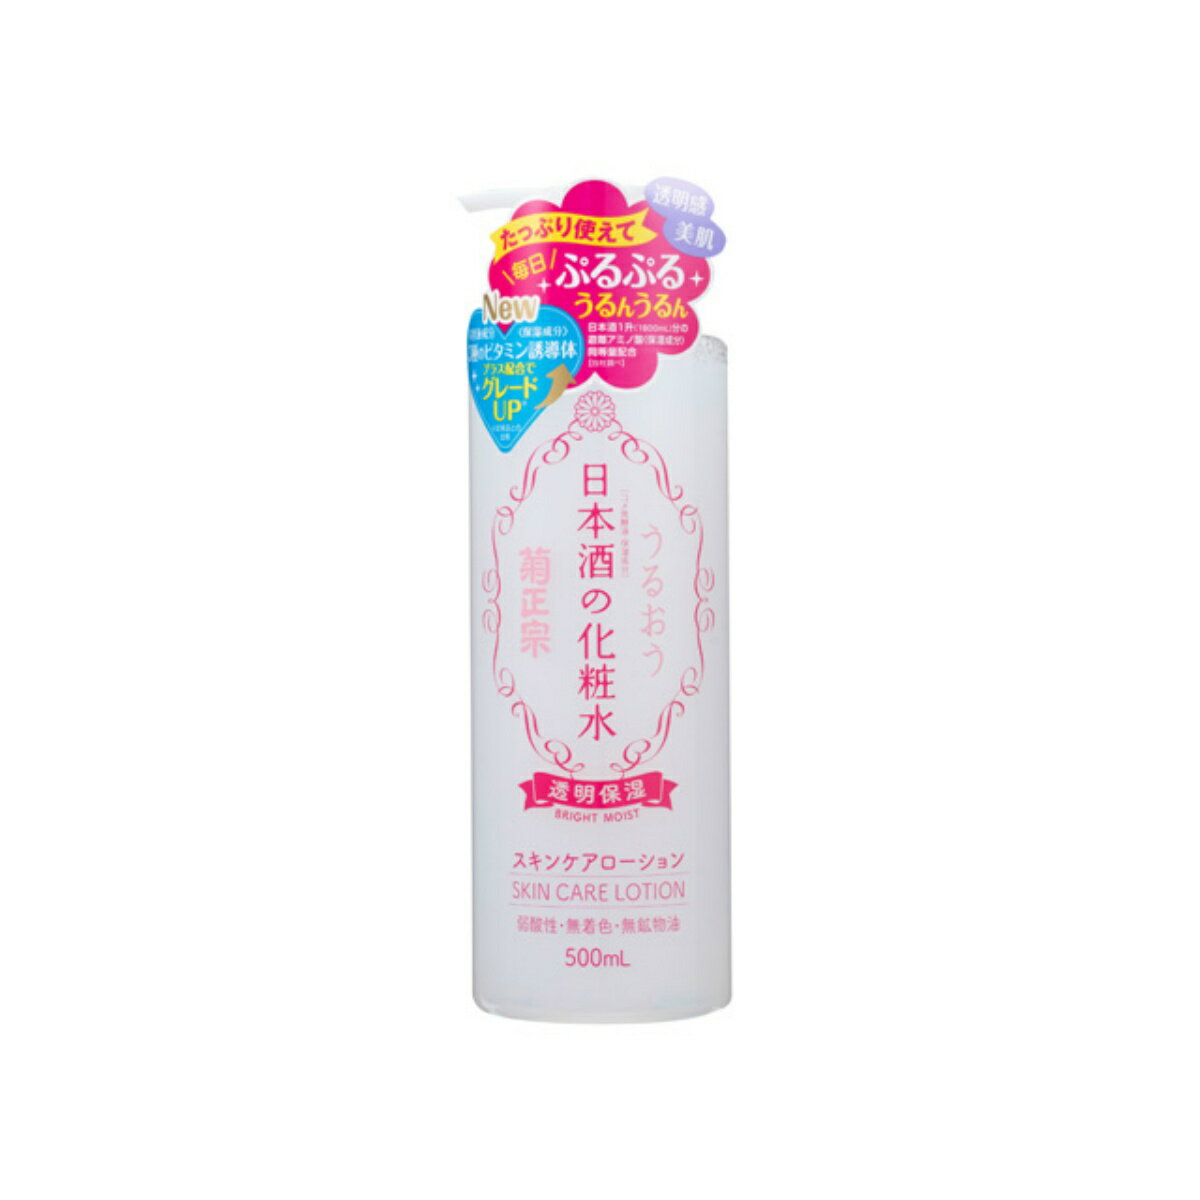 日本酒の化粧水 透明保湿 500ml 本体 ポンプボトル ふわっと香る甘い日本酒の香りパッケージ変更の場合あり